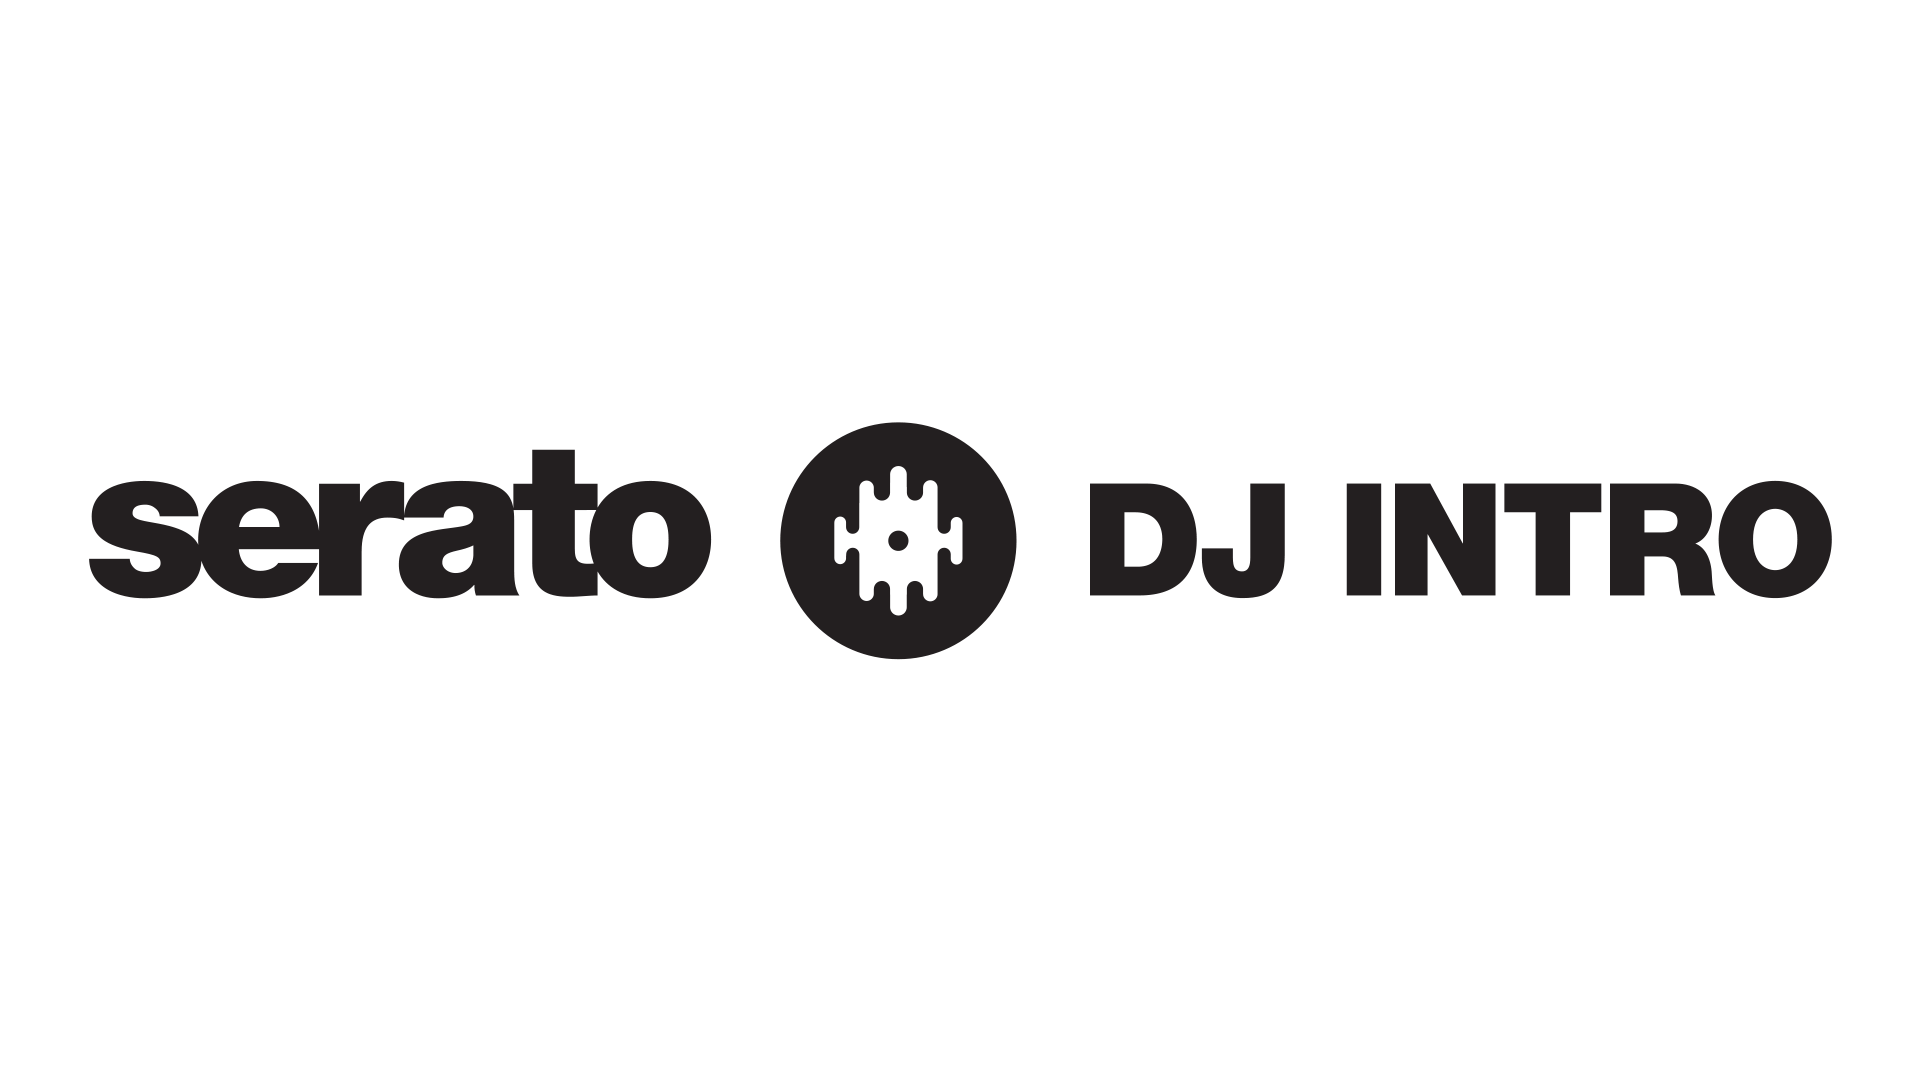 Serato DJ Intro | Serato.com